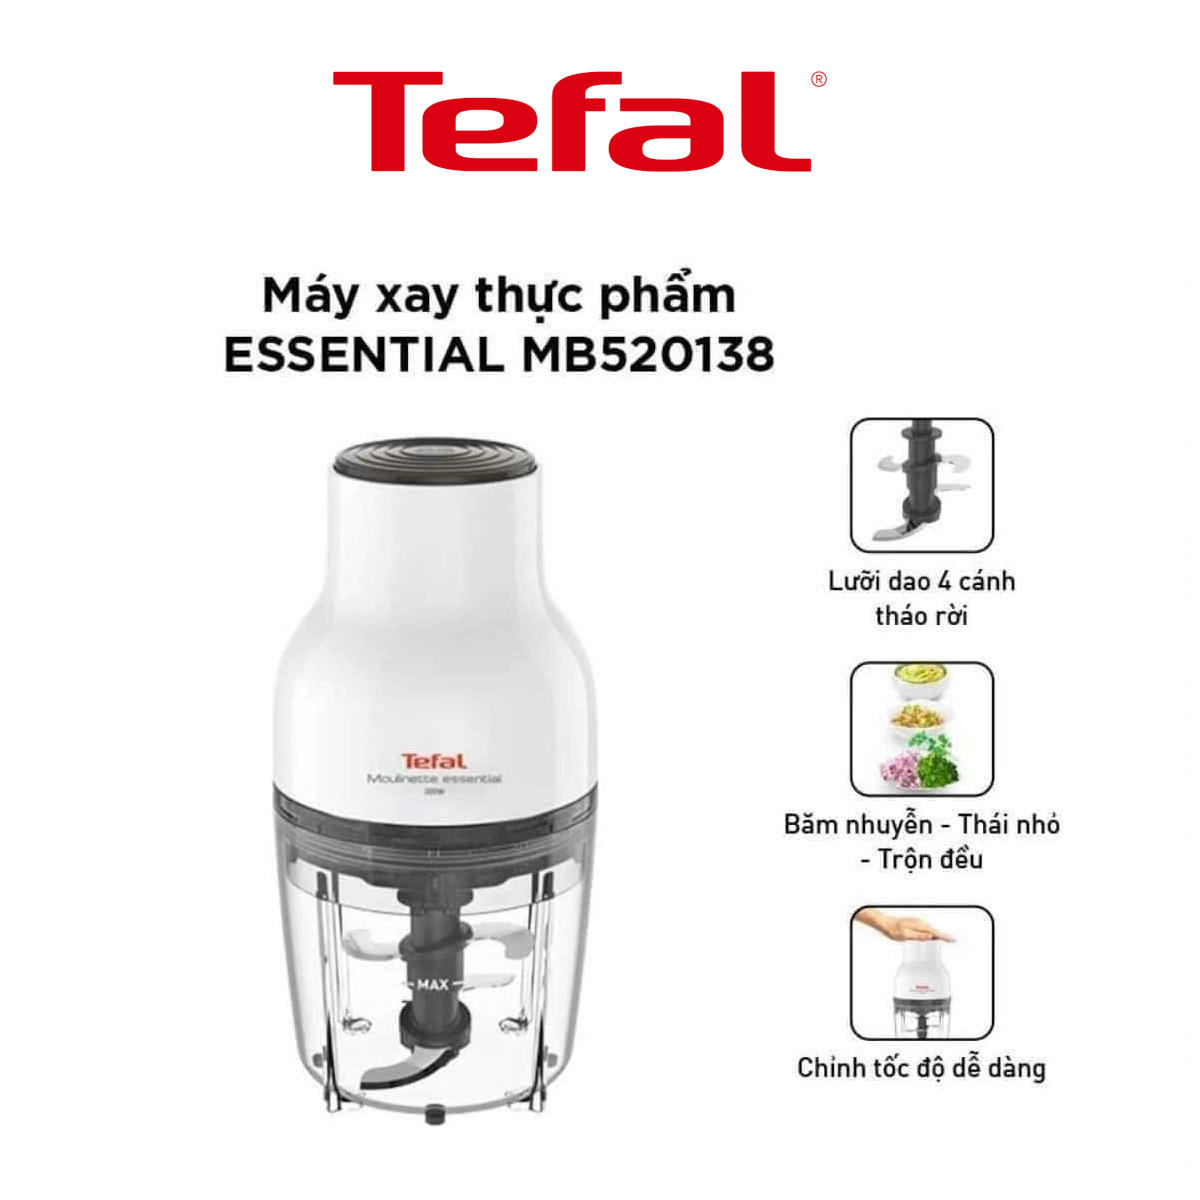 Máy xay thực phẩm 3 trong 1 Tefal Essential MB520138 dung tích 400ml, công suất 300W